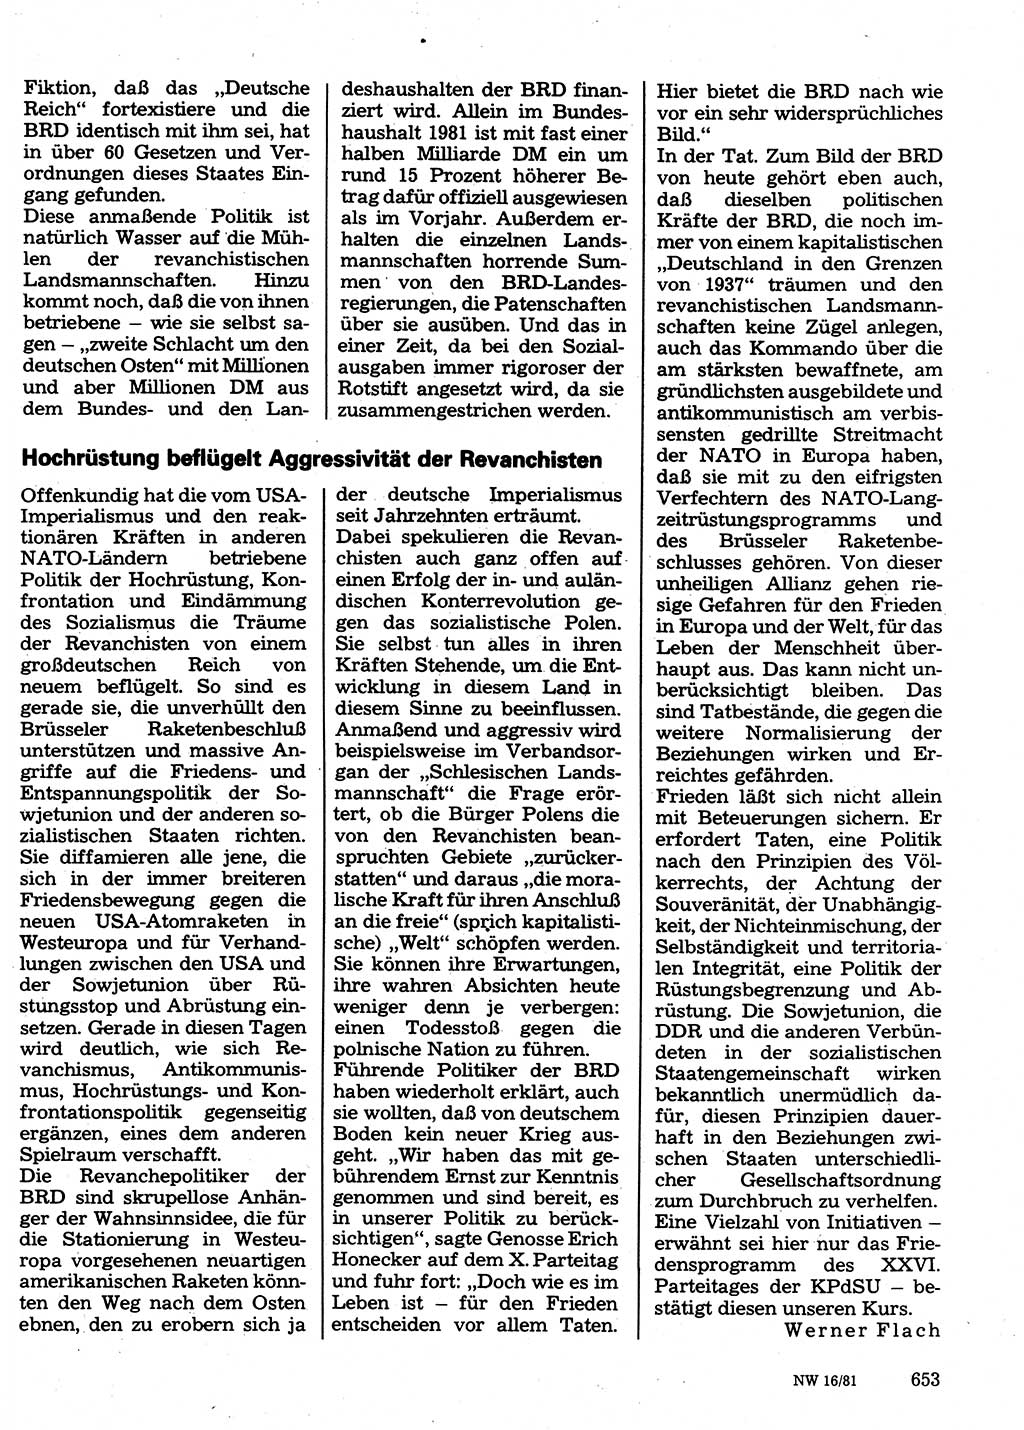 Neuer Weg (NW), Organ des Zentralkomitees (ZK) der SED (Sozialistische Einheitspartei Deutschlands) für Fragen des Parteilebens, 36. Jahrgang [Deutsche Demokratische Republik (DDR)] 1981, Seite 653 (NW ZK SED DDR 1981, S. 653)